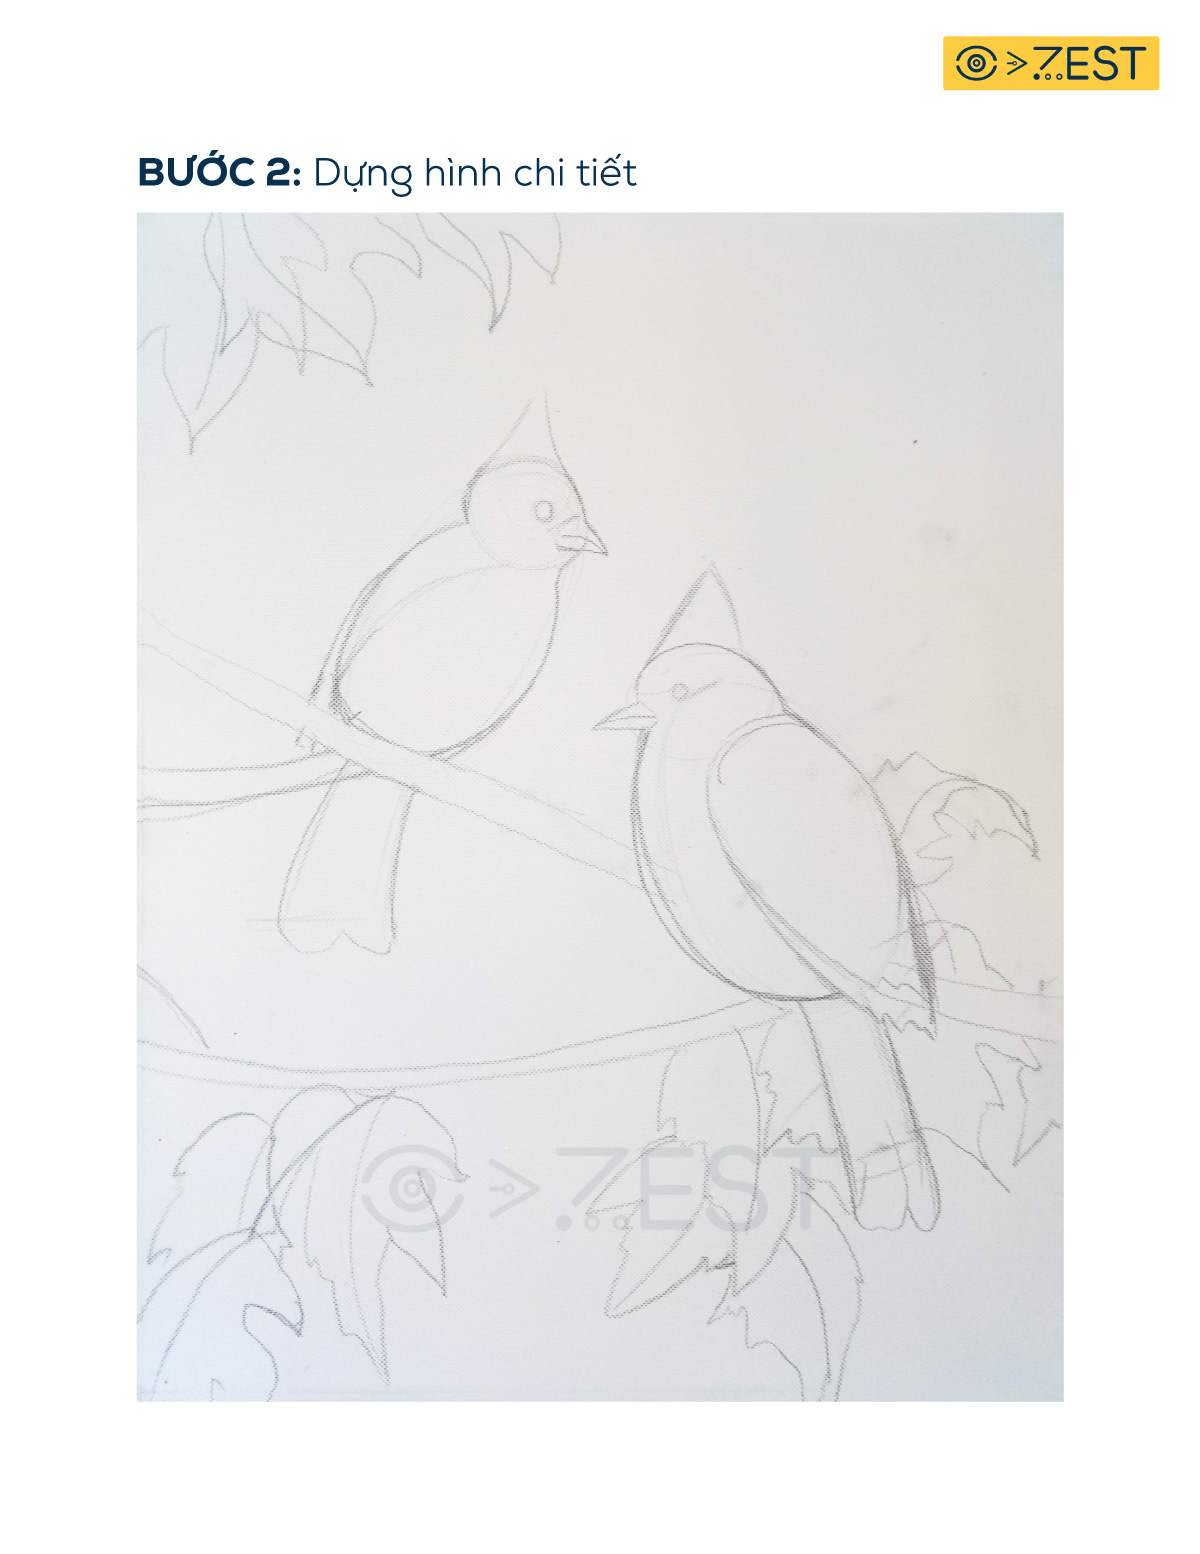 Vẽ chim acrylic: Đắm mình trong thế giới nghệ thuật với biểu tượng của thiên nhiên - chim chào mào. Sử dụng kỹ thuật acrylic để vẽ, bạn sẽ có thể tạo ra một tác phẩm độc đáo tuyệt vời. Hãy tận hưởng giây phút sáng tạo và mang cảm xúc của bạn vào từng nét vẽ, chắc chắn bạn sẽ tạo ra một bức tranh vô cùng đẹp mắt.